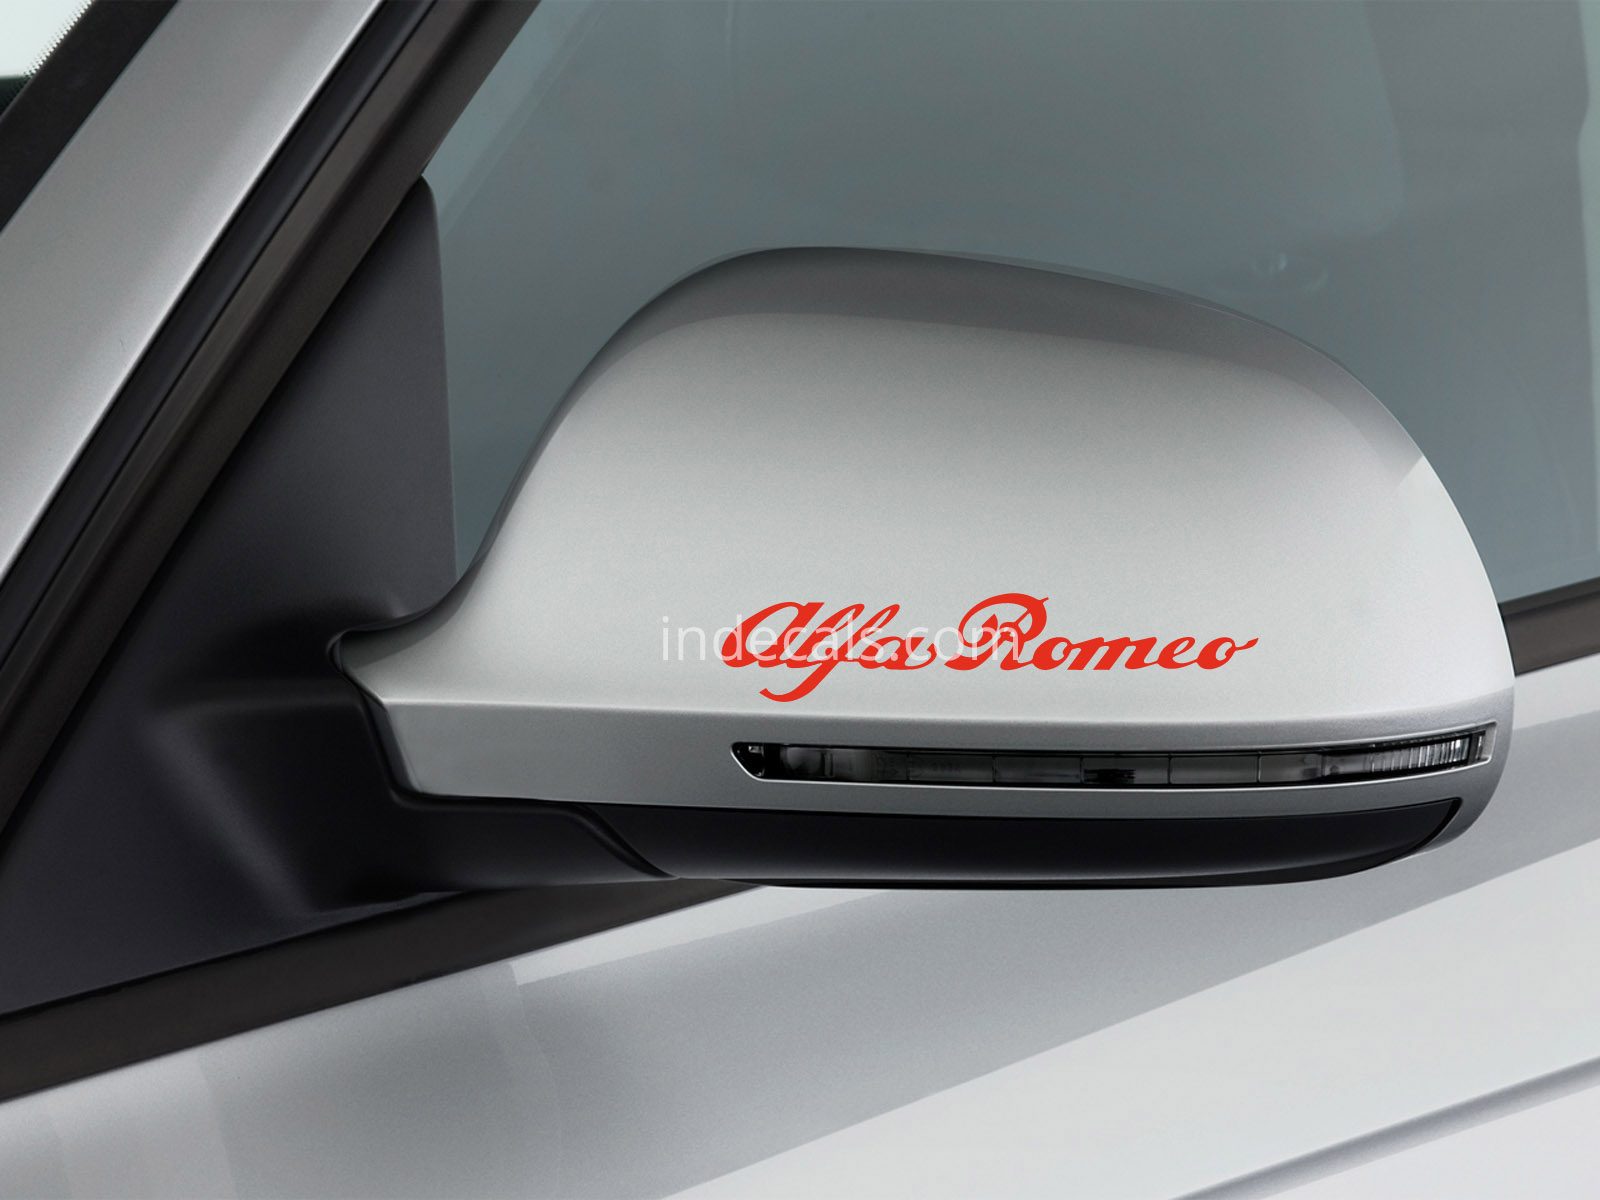 3 x Alfa Romeo Stickers for Mirrors - White